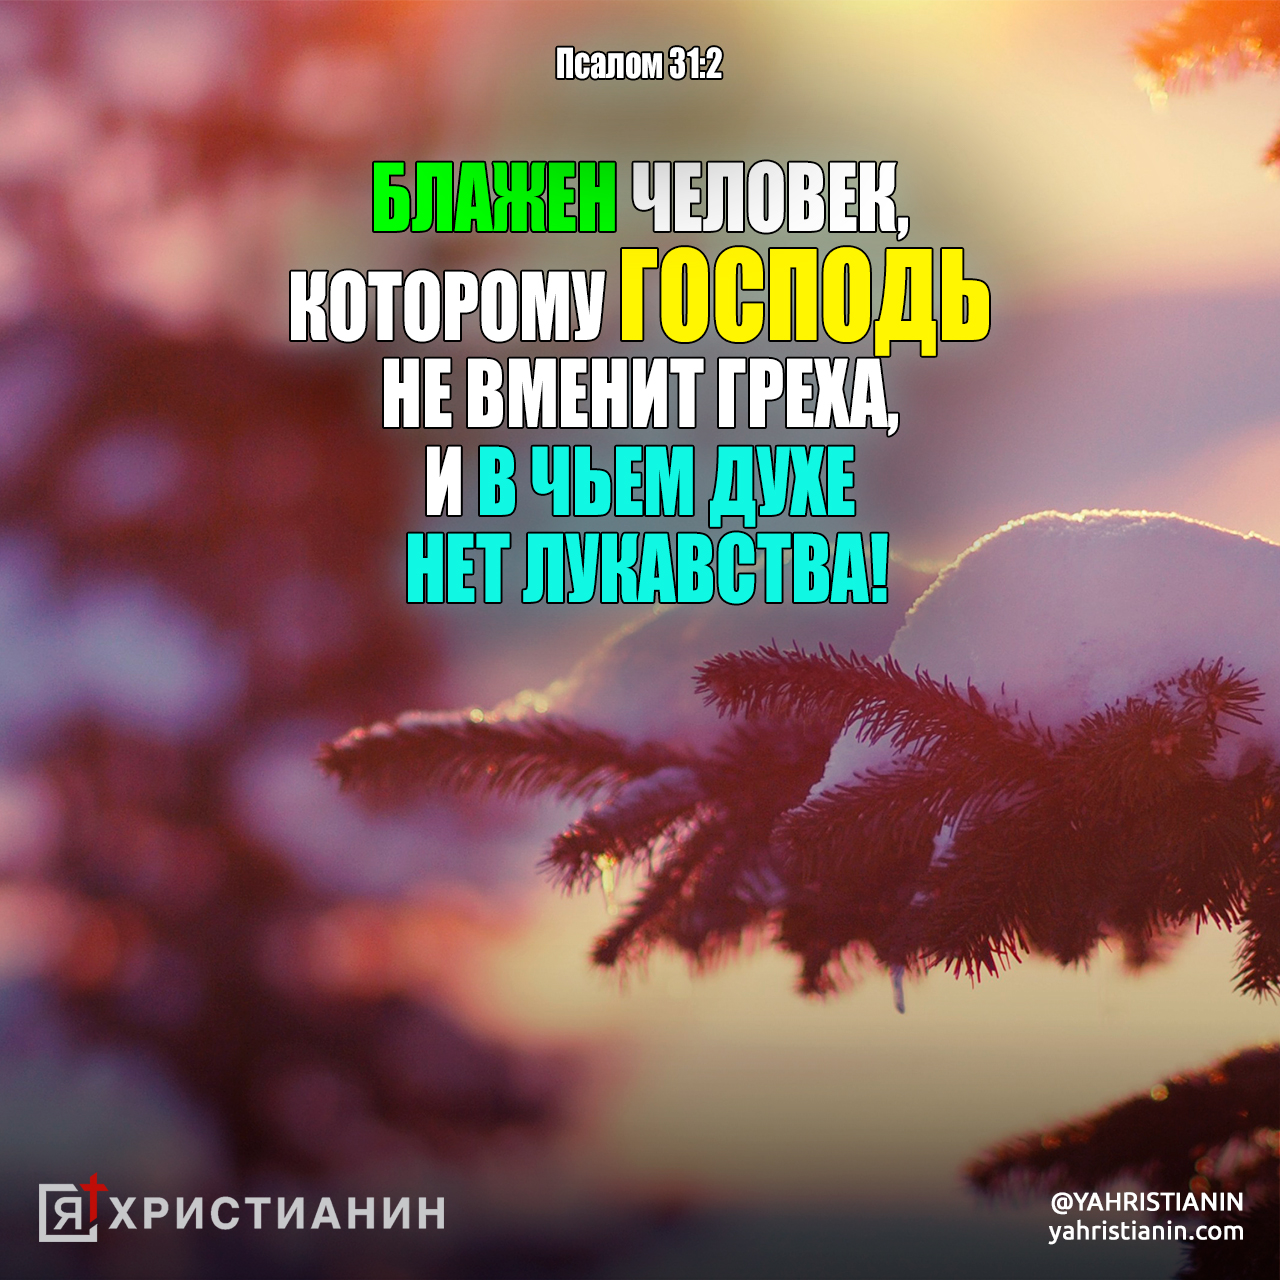 Псалом 85 на русском